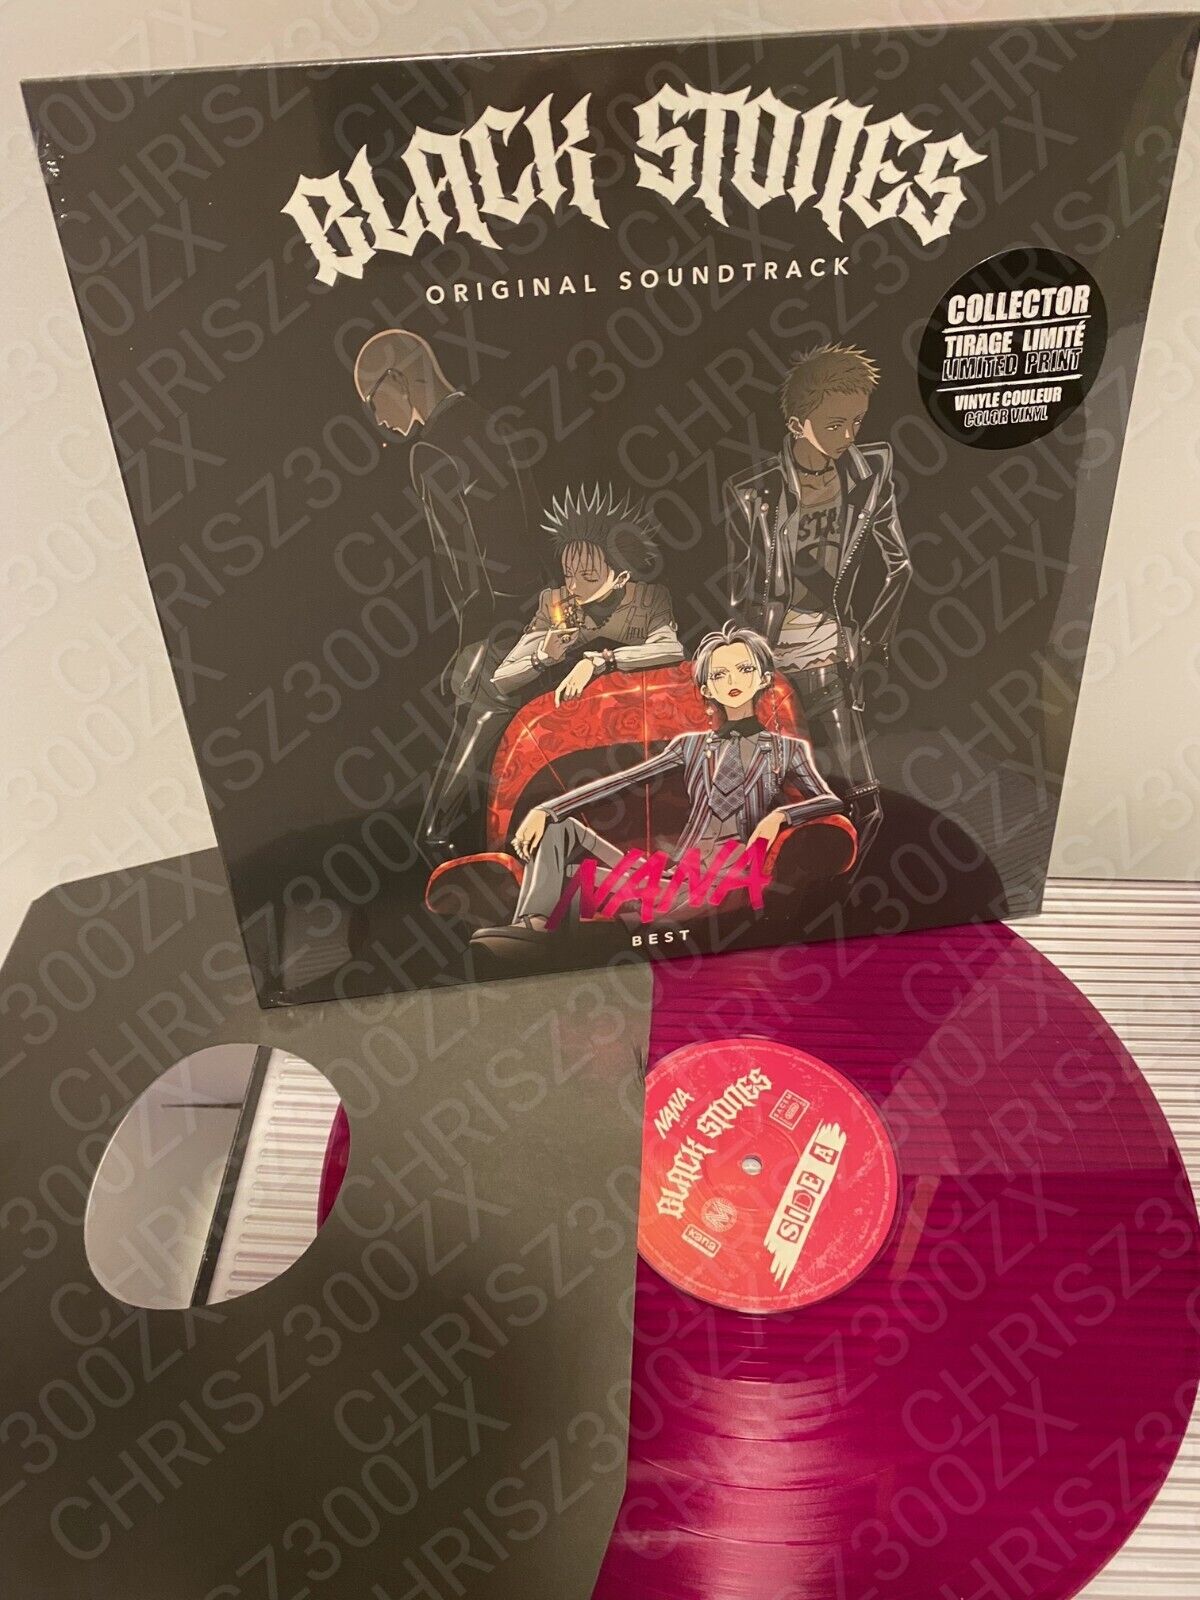 NANA Black Stones Best Collection Anime Vinyl Record Soundtrack LP Purple Color